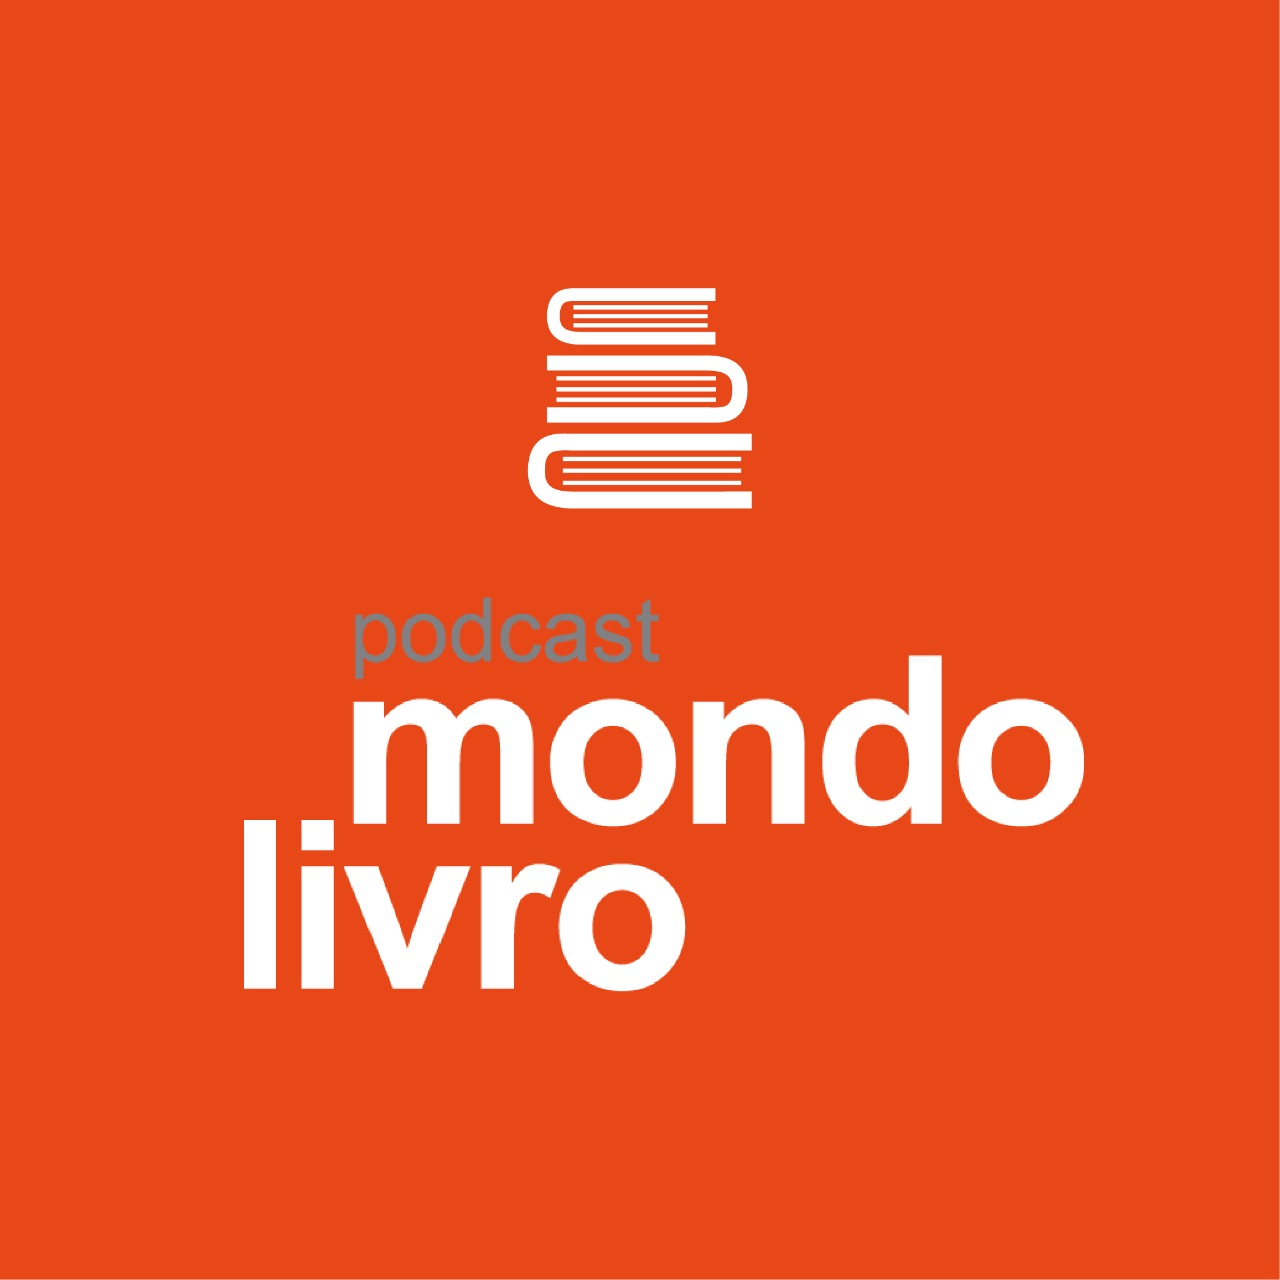 Mondolivro - "O legado de nossa miséria", livro de estreia de Felipe Holloway